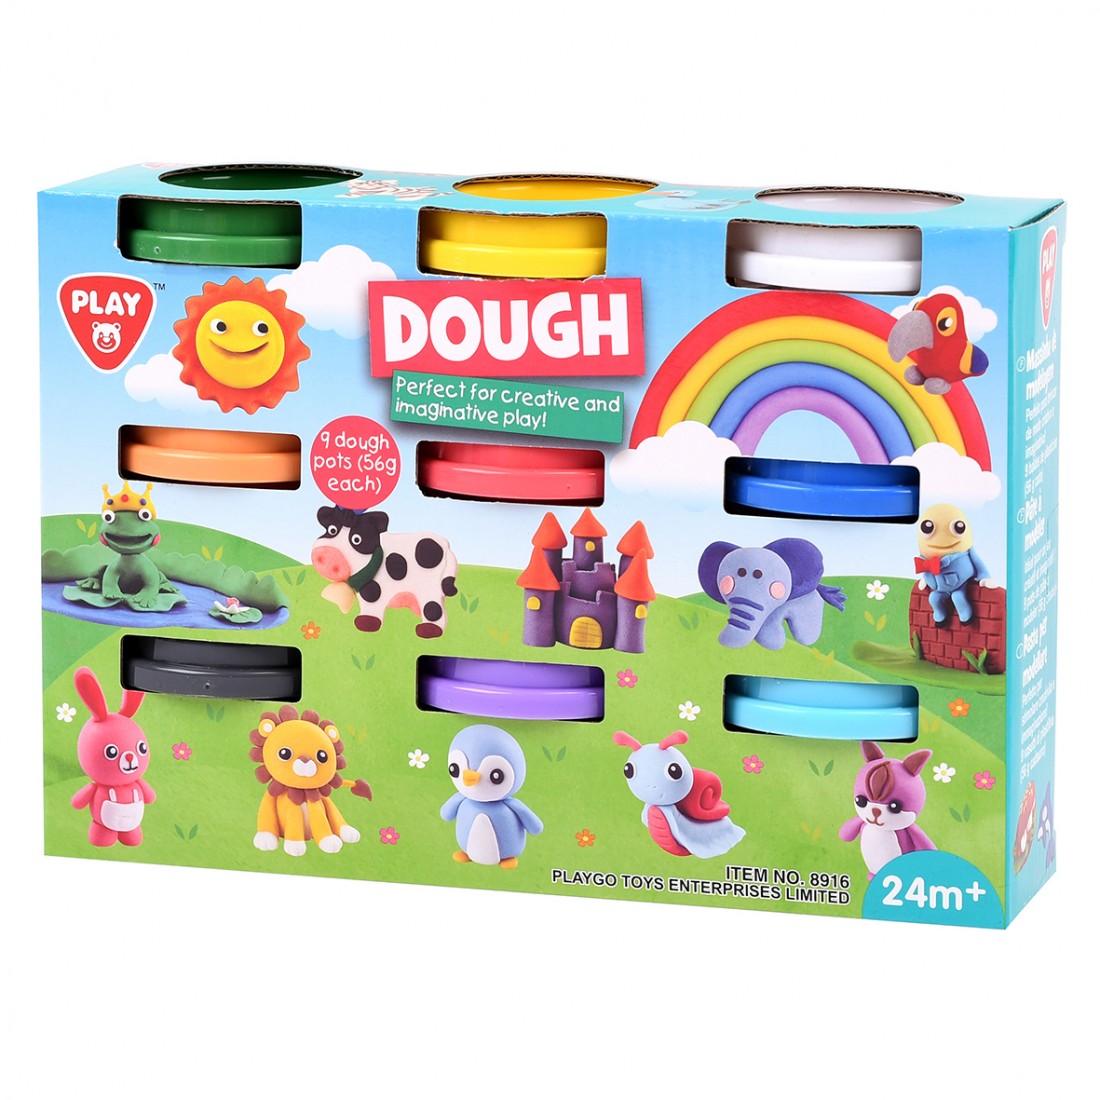 Playgo Set of 9 Colored Plasticine Jars